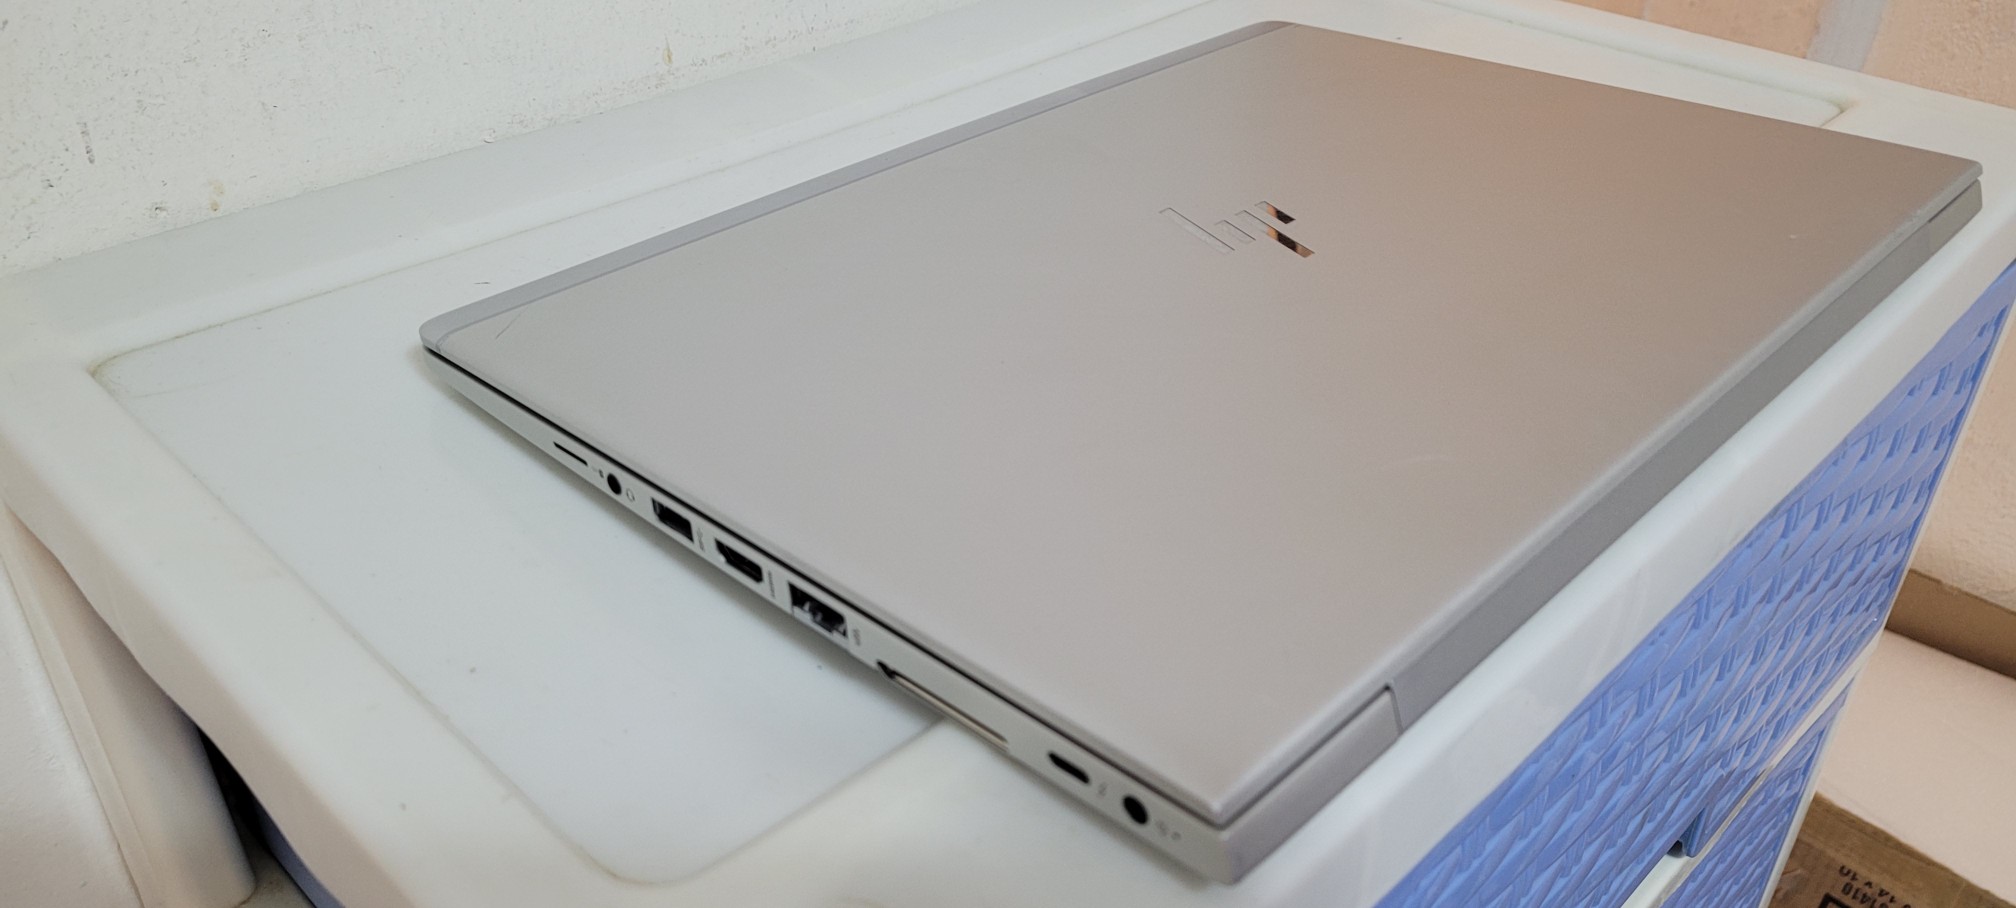 computadoras y laptops - Laptop hp G5 14 Pulg Core i5 7ma Gen Ram 8gb ddr4 Disco 256gb SSD 2